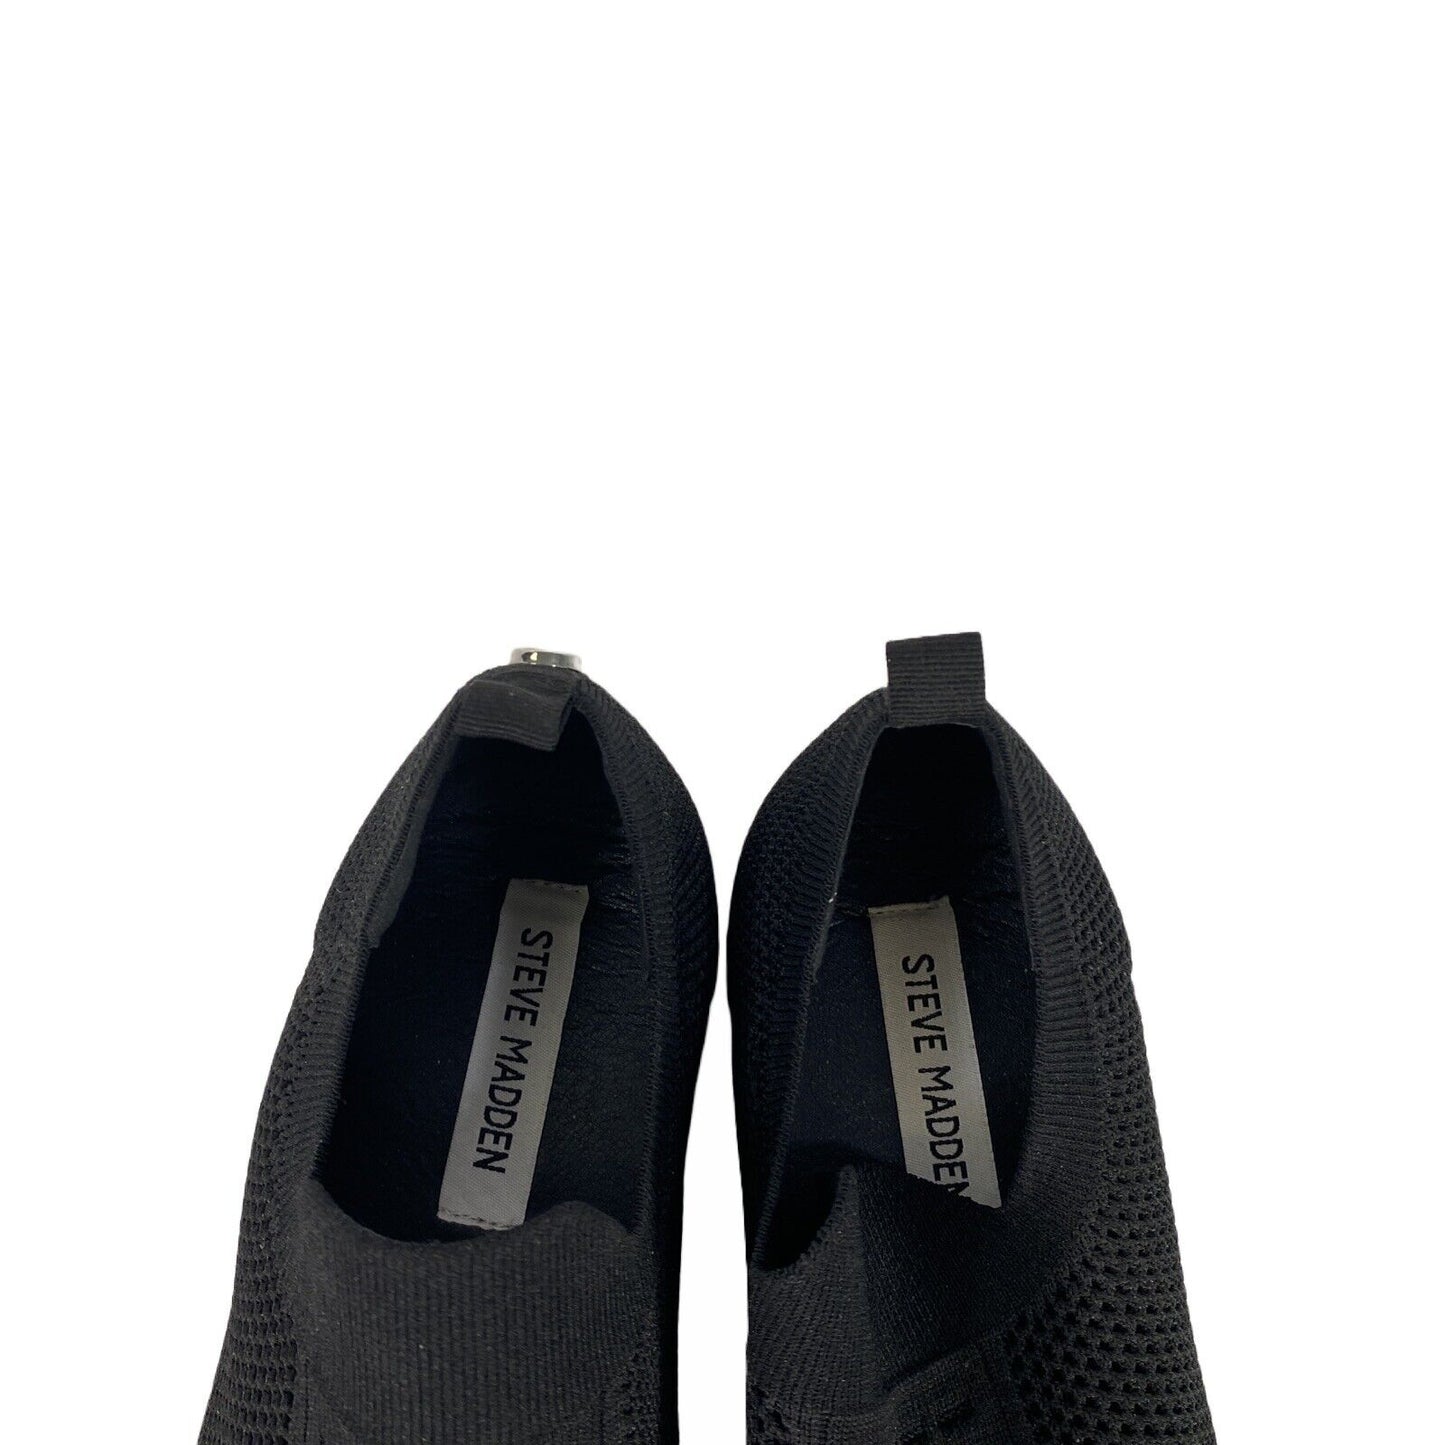 Steve Madden Women's Black Mesh Daray Slip On Sneakers Shoes - 7.5